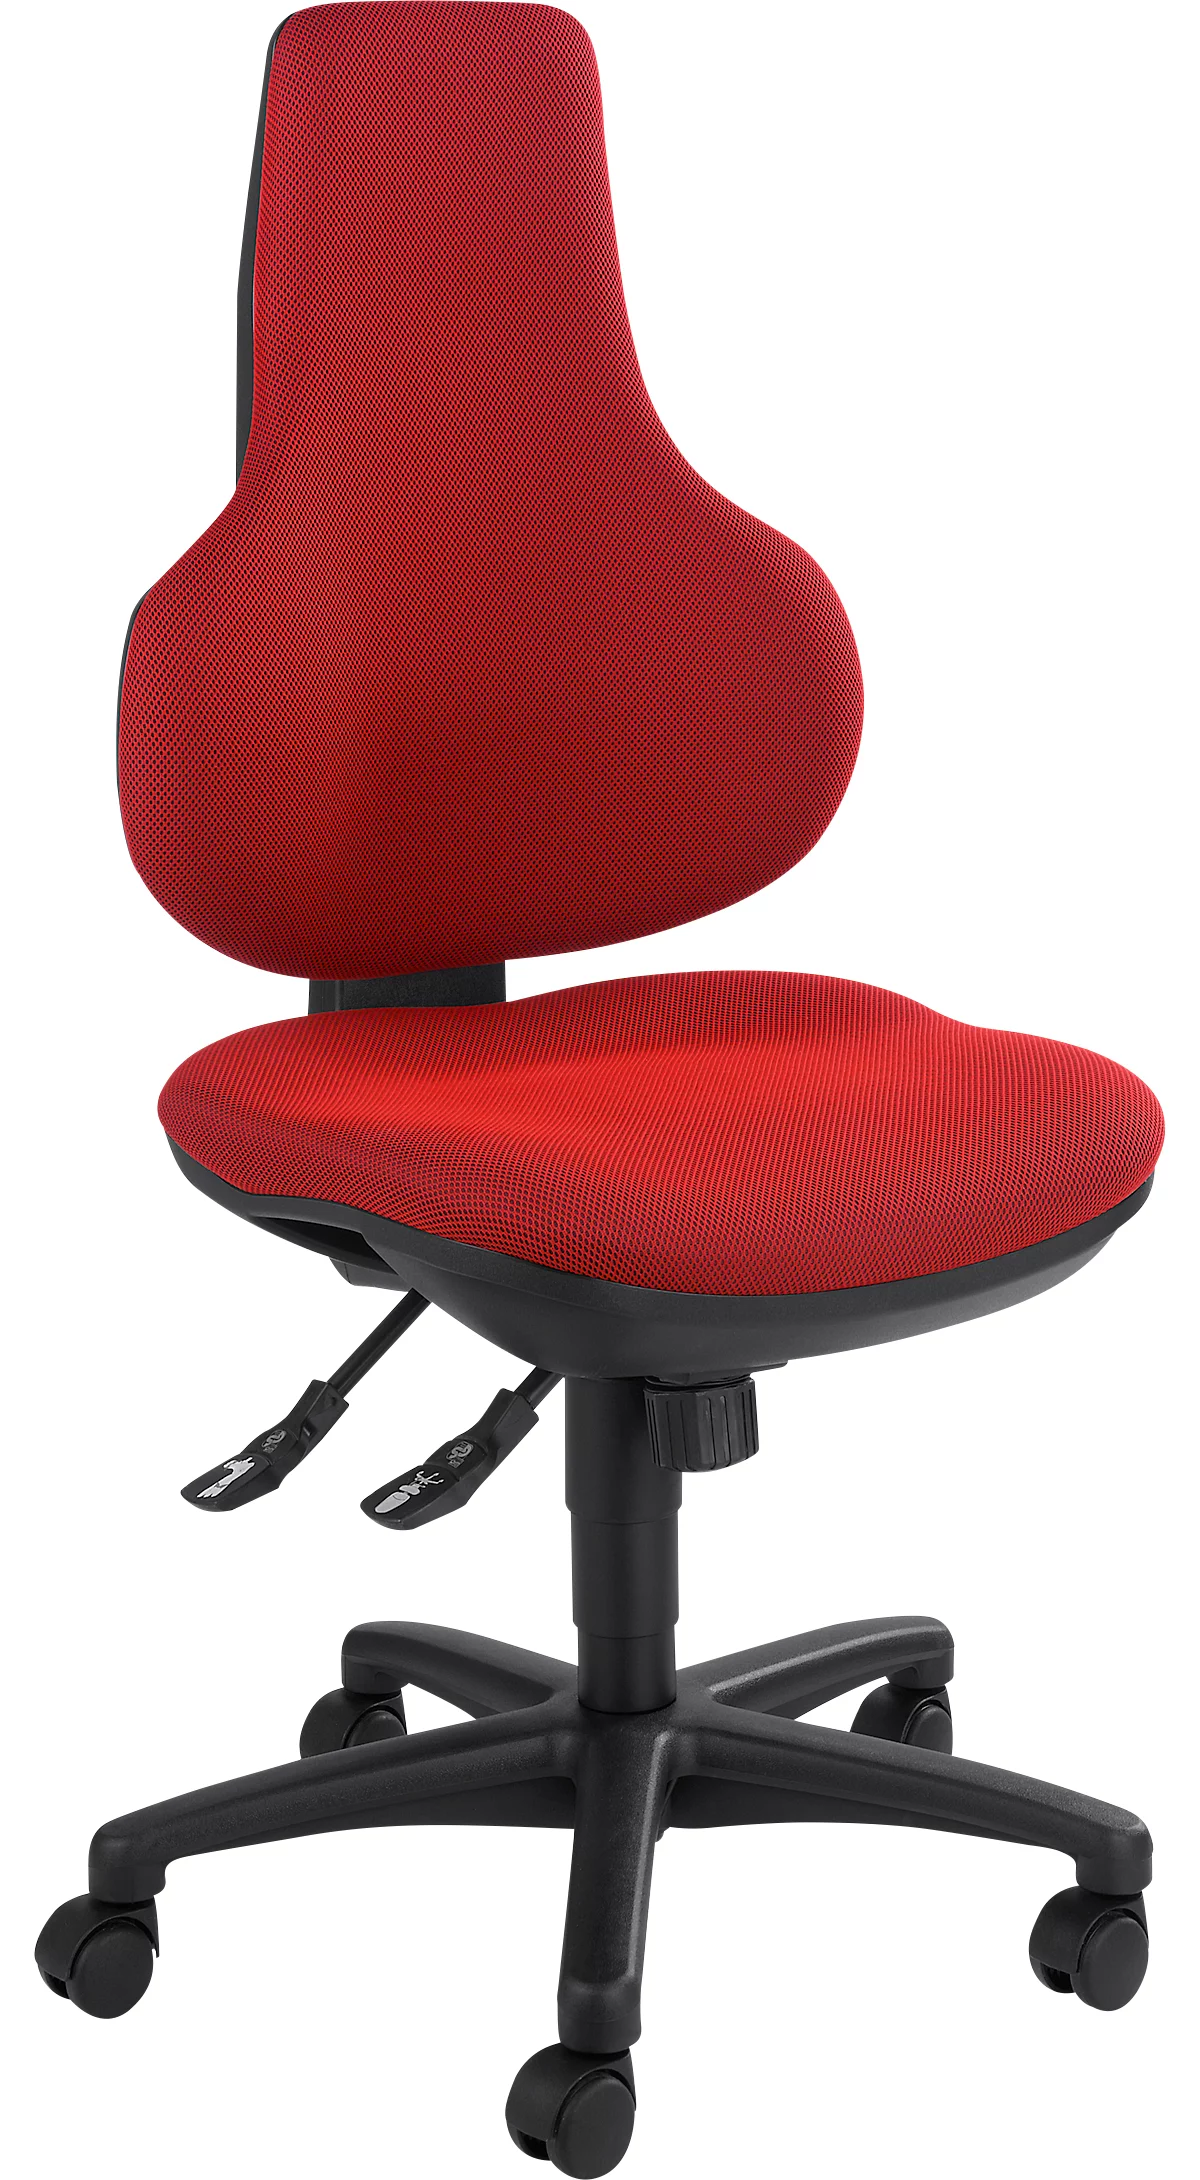 Silla de oficina Topstar ERGO POINT, mecanismo sincronizado, sin reposabrazos, asiento ergonómico especial, rojo